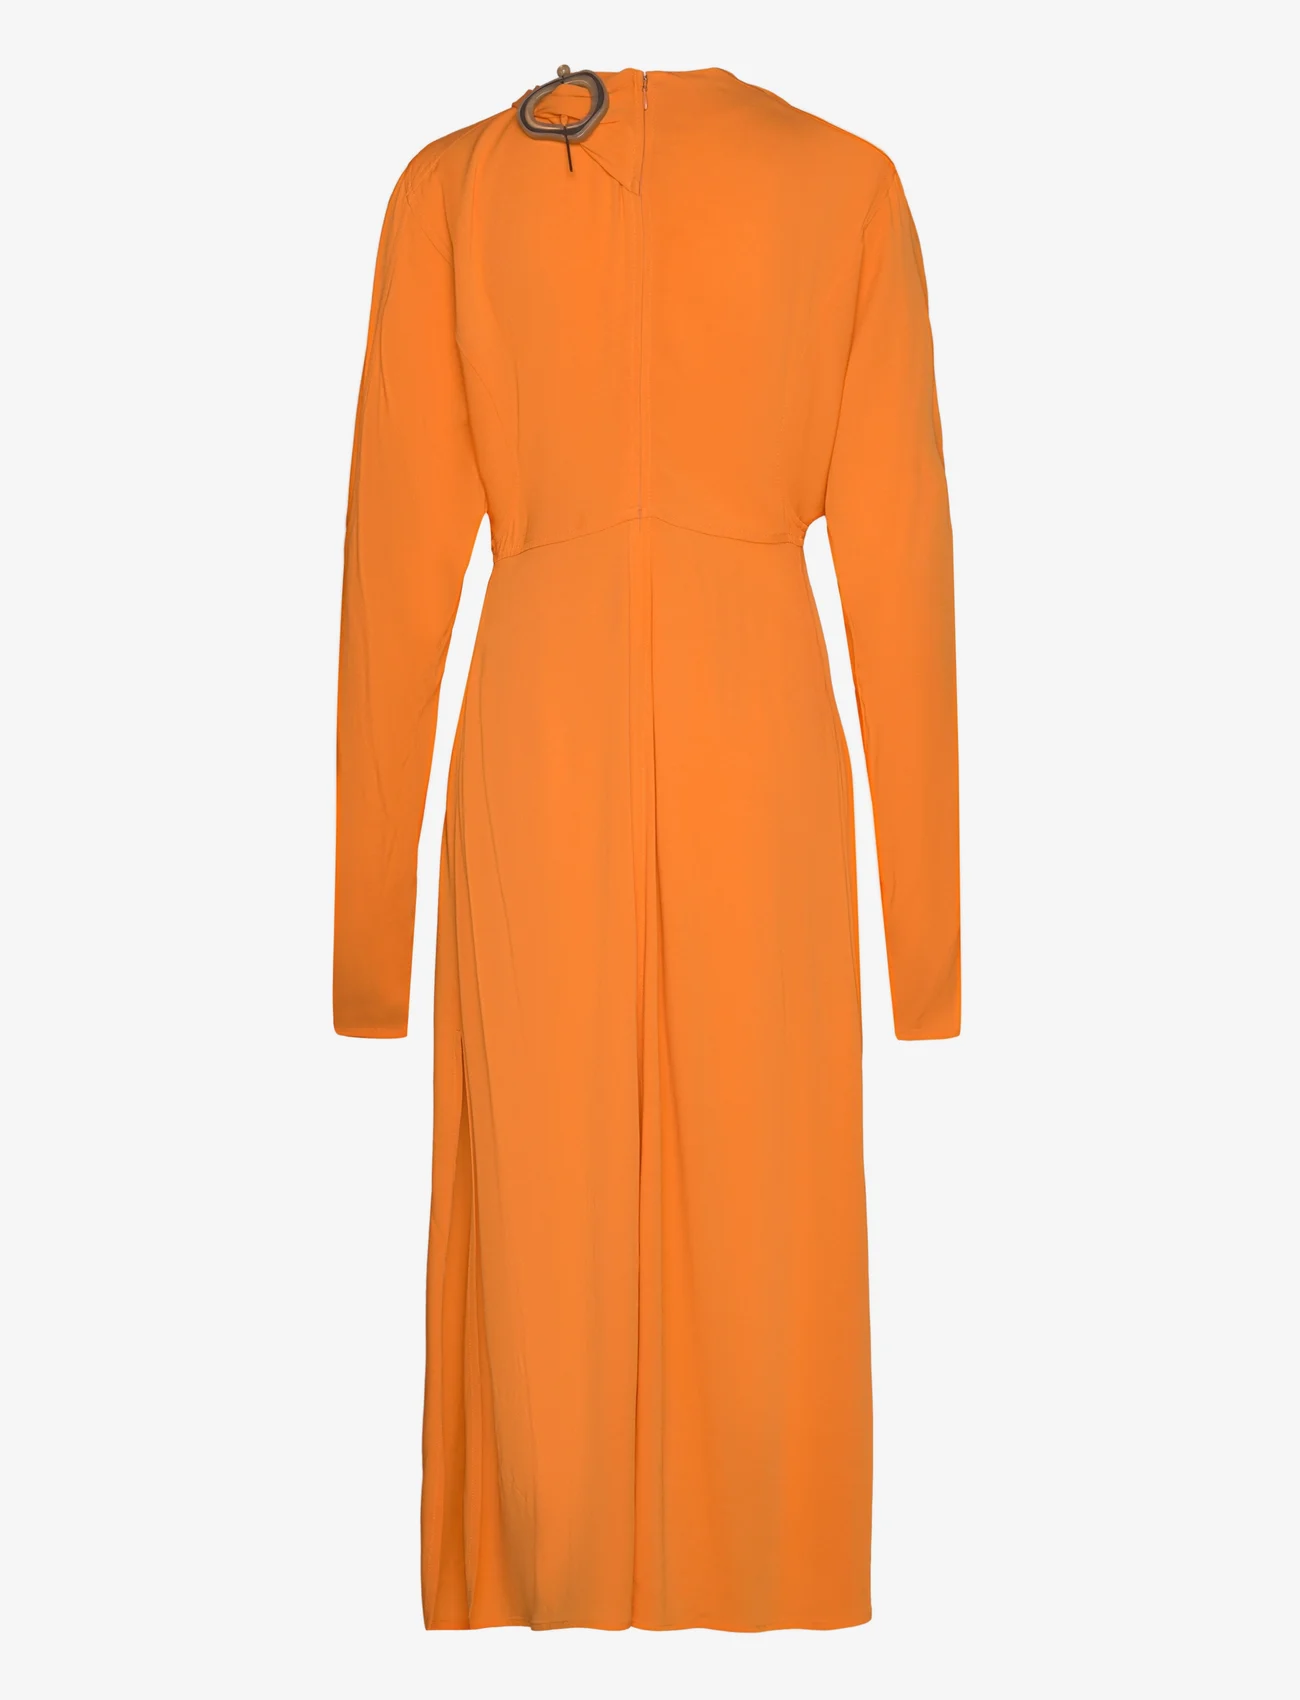 Wood Wood - Ambre crepe dress - peoriided outlet-hindadega - abricot orange - 1